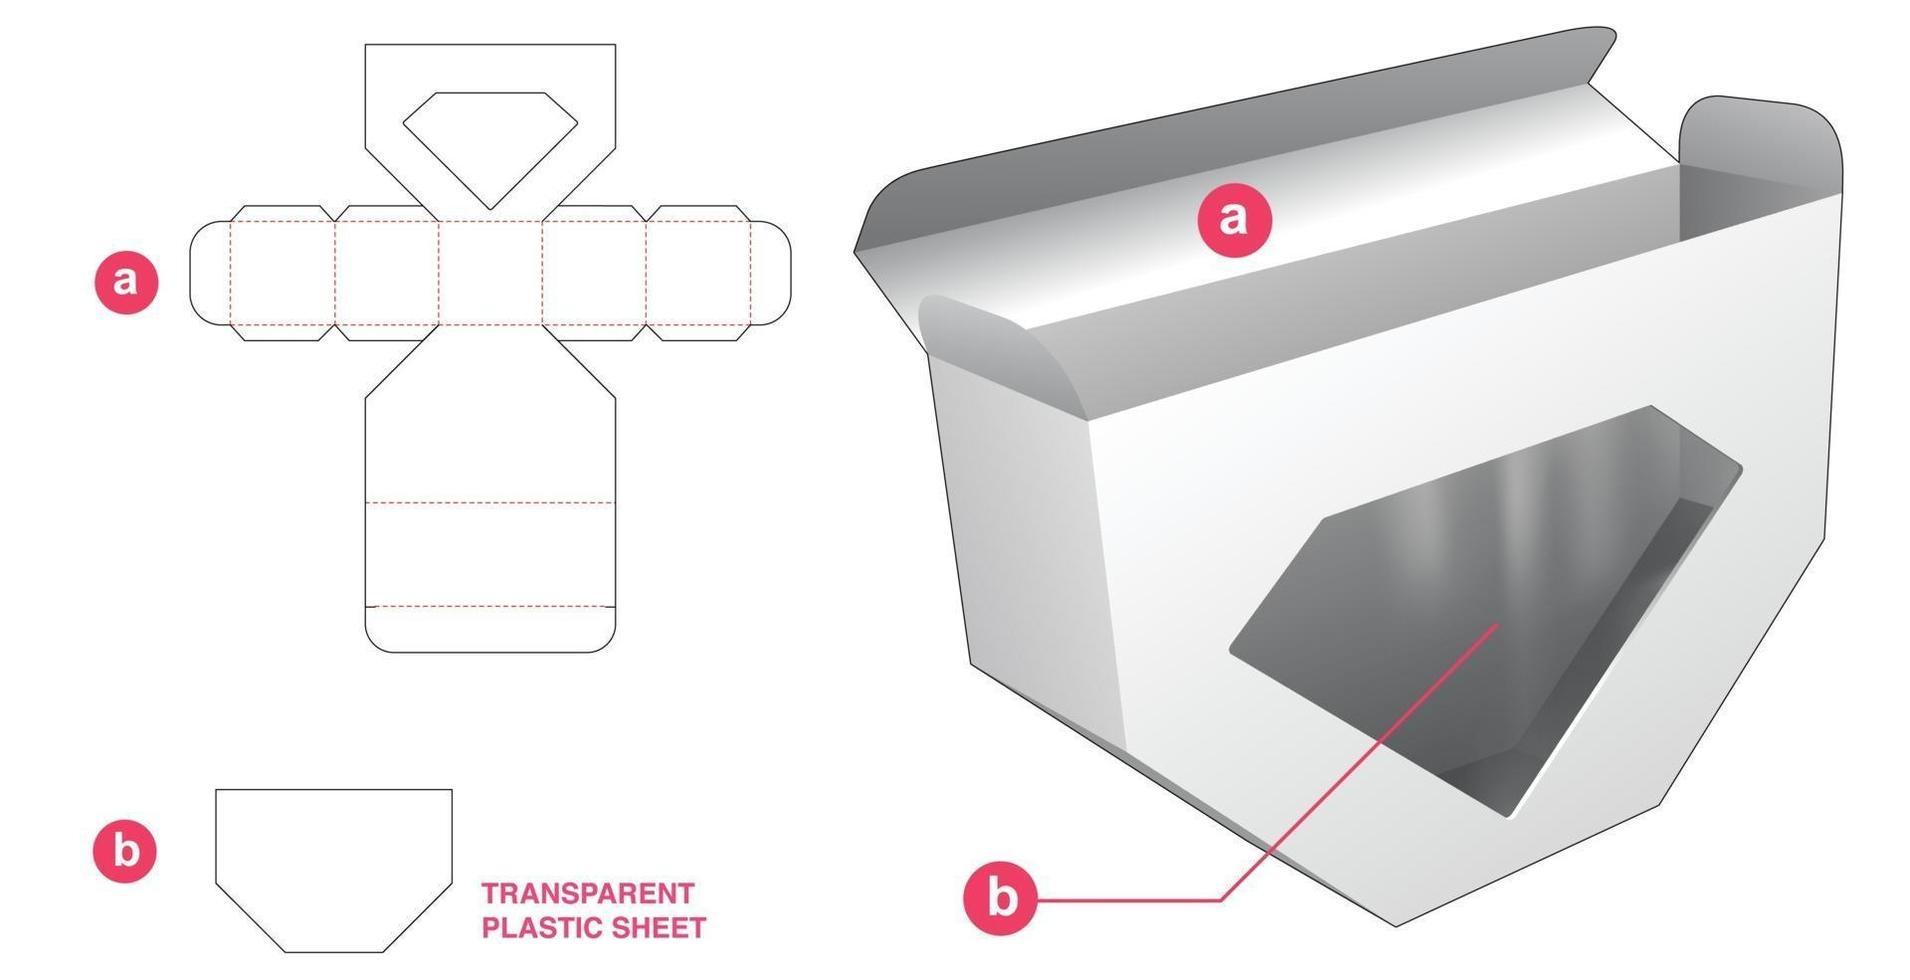 packaging box die cut template vector